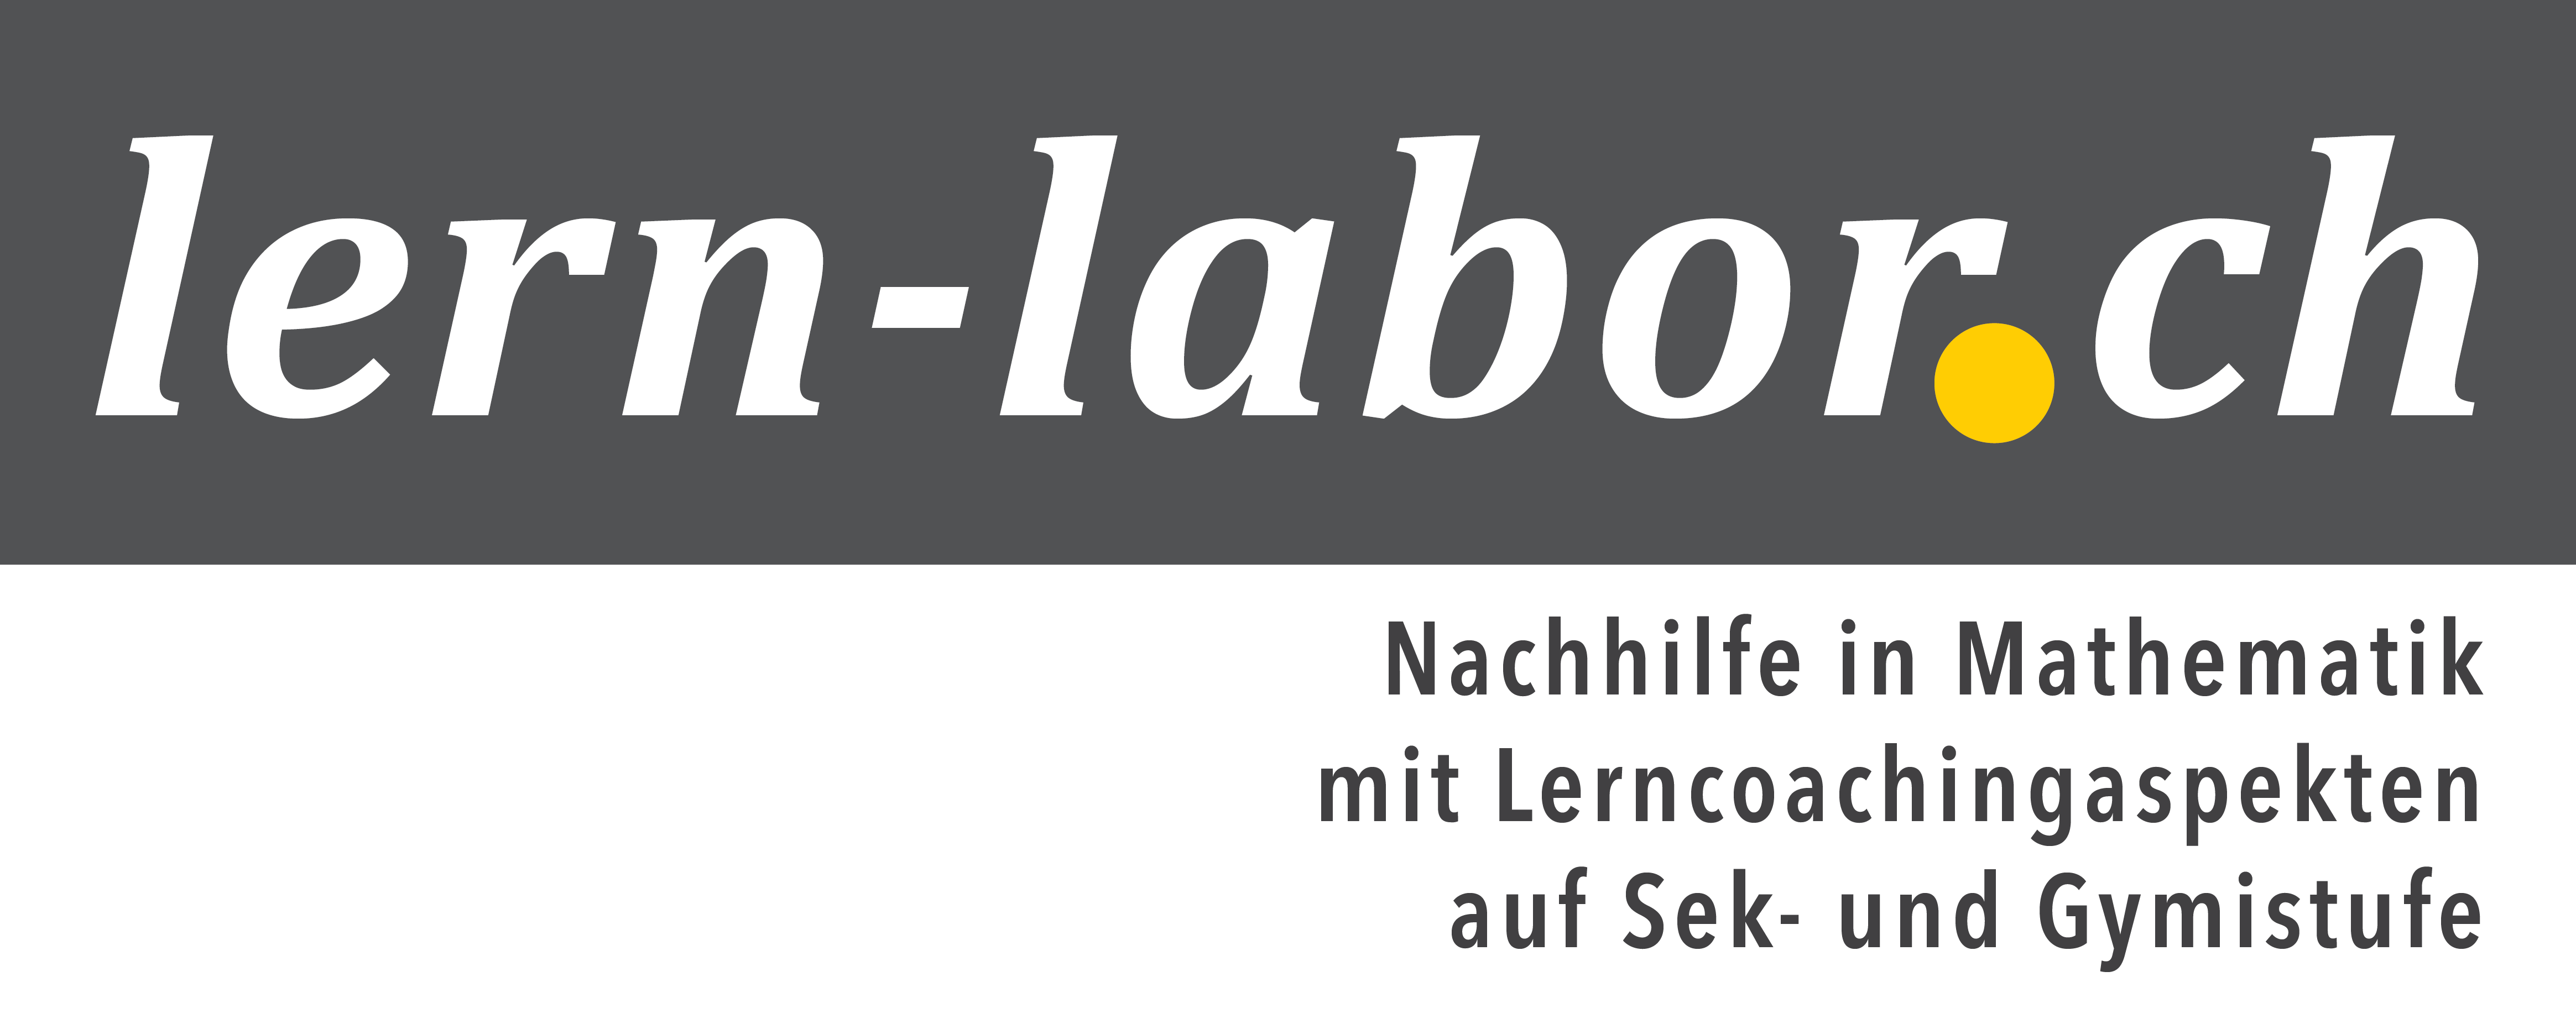 lern-labor.ch